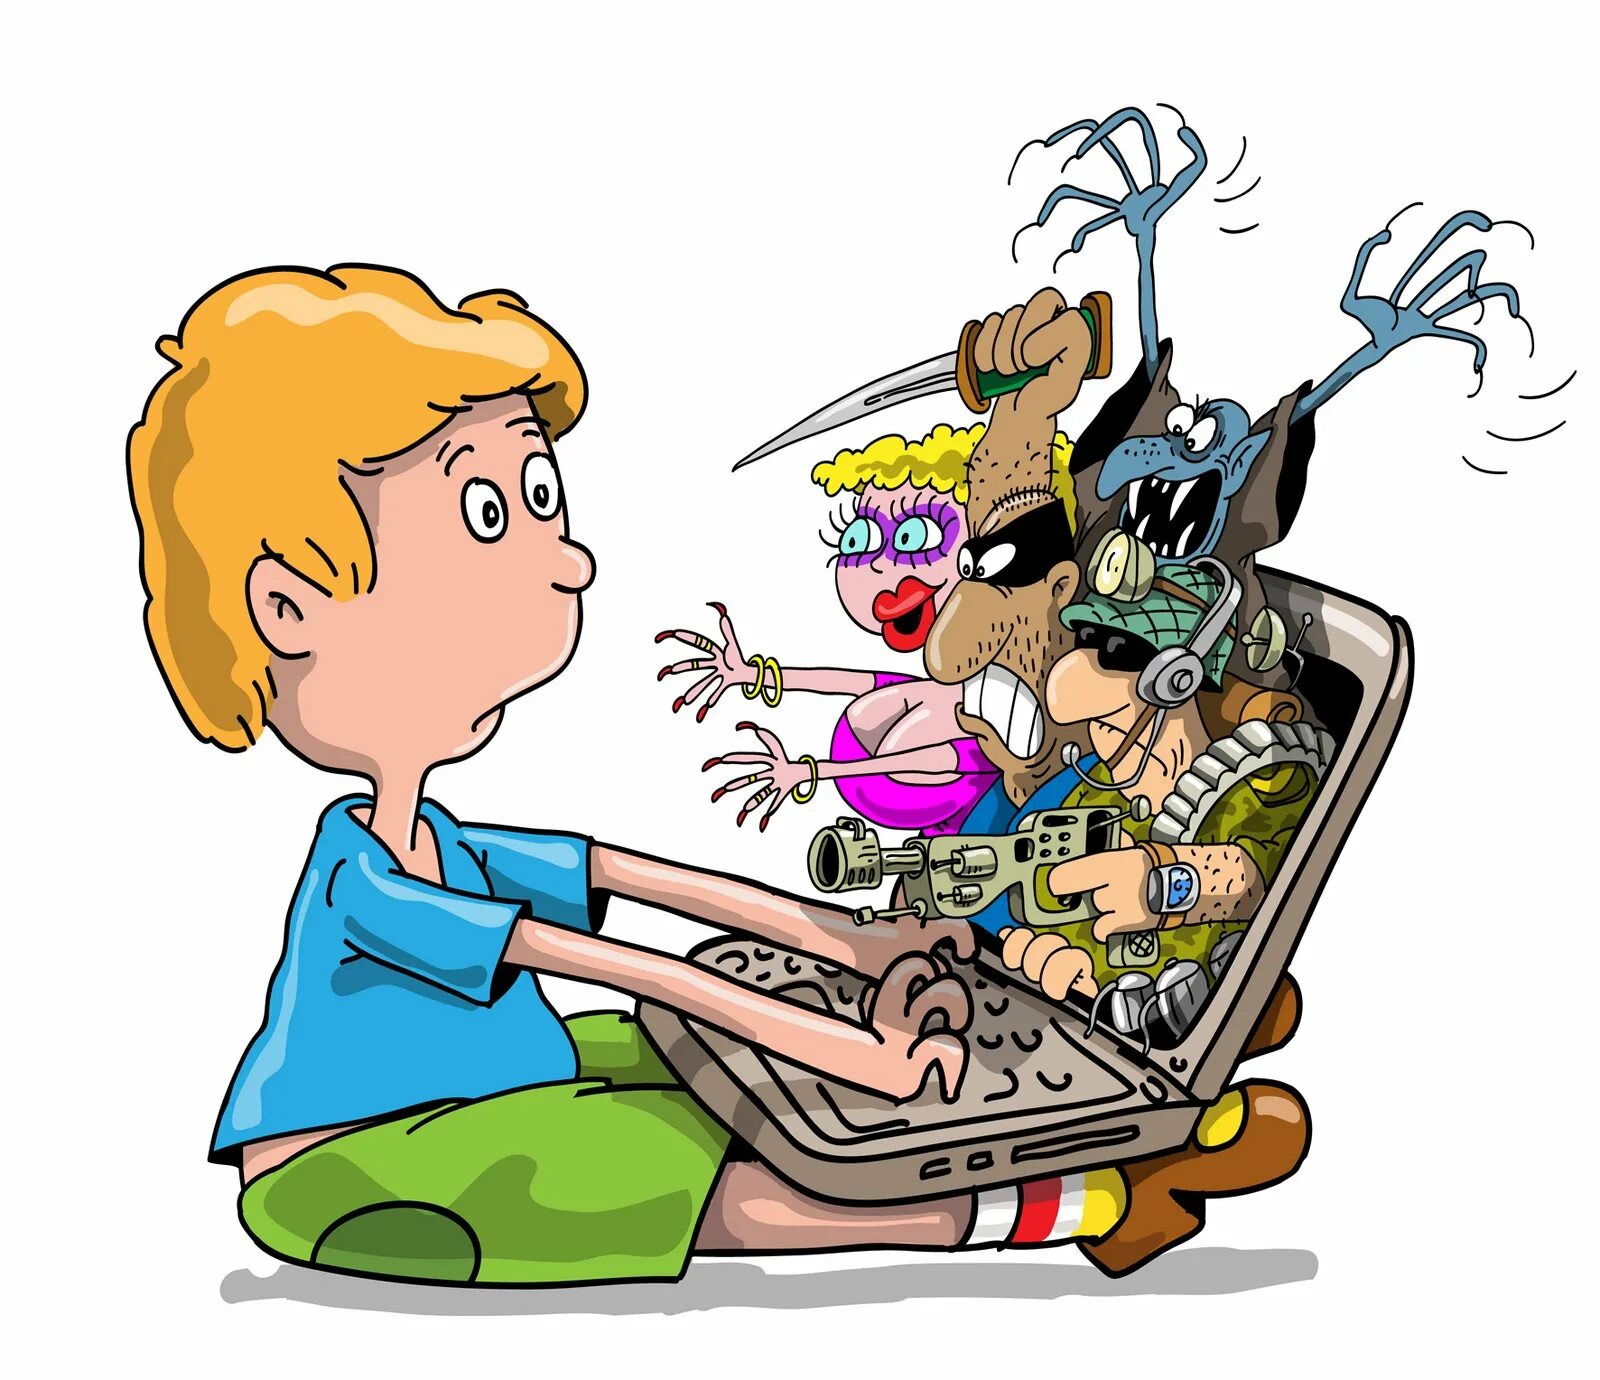 Правила игр в сети. Дети компьютер арт. Компьютер иллюстрация. Опасности в интернете для детей. Детям об интернете.